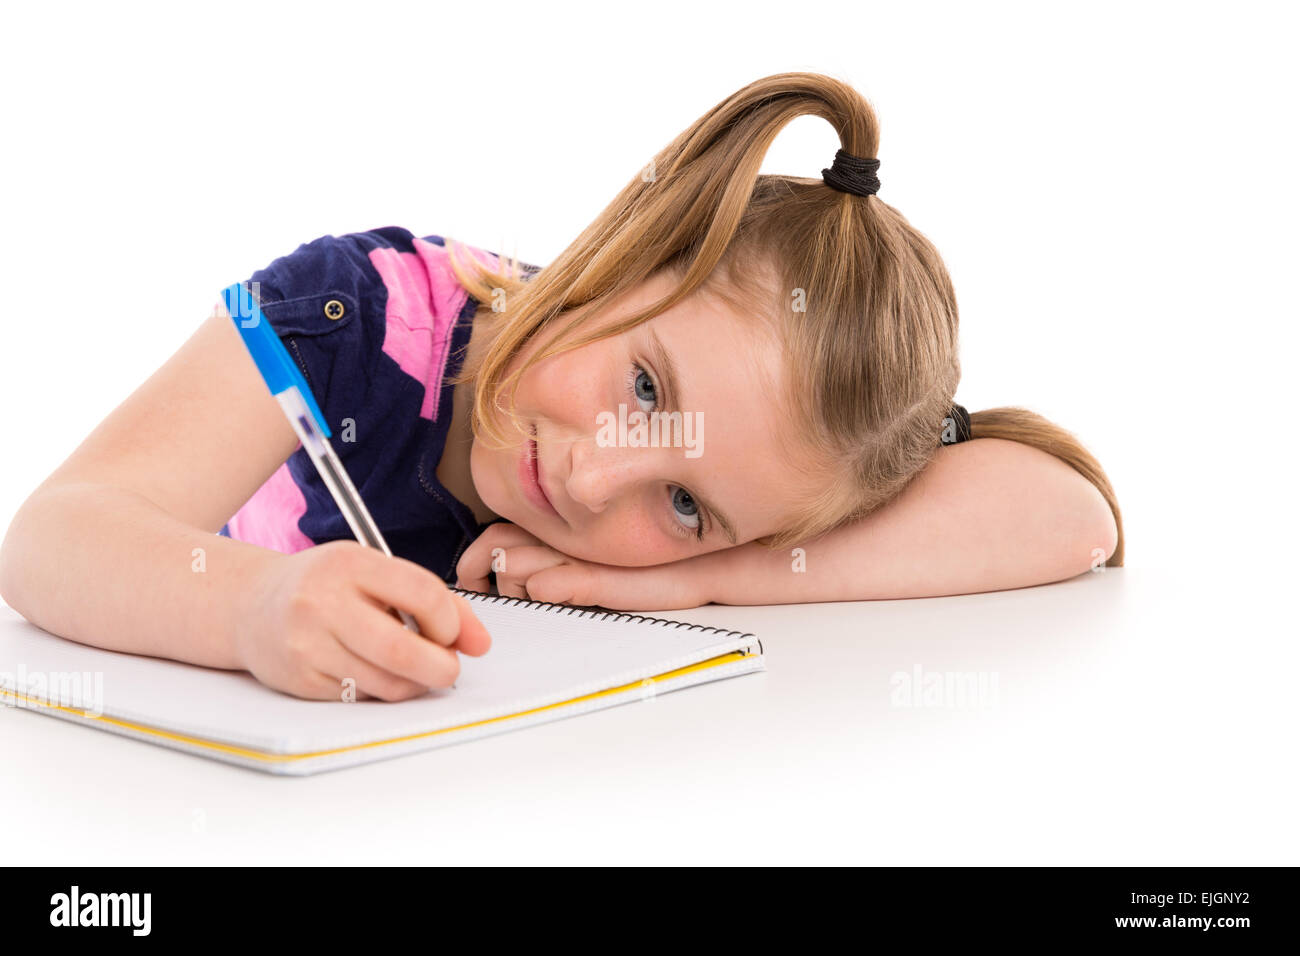 Blonde kid frastagliata una studentessa con notebook a spirale nel banco della pupilla Foto Stock